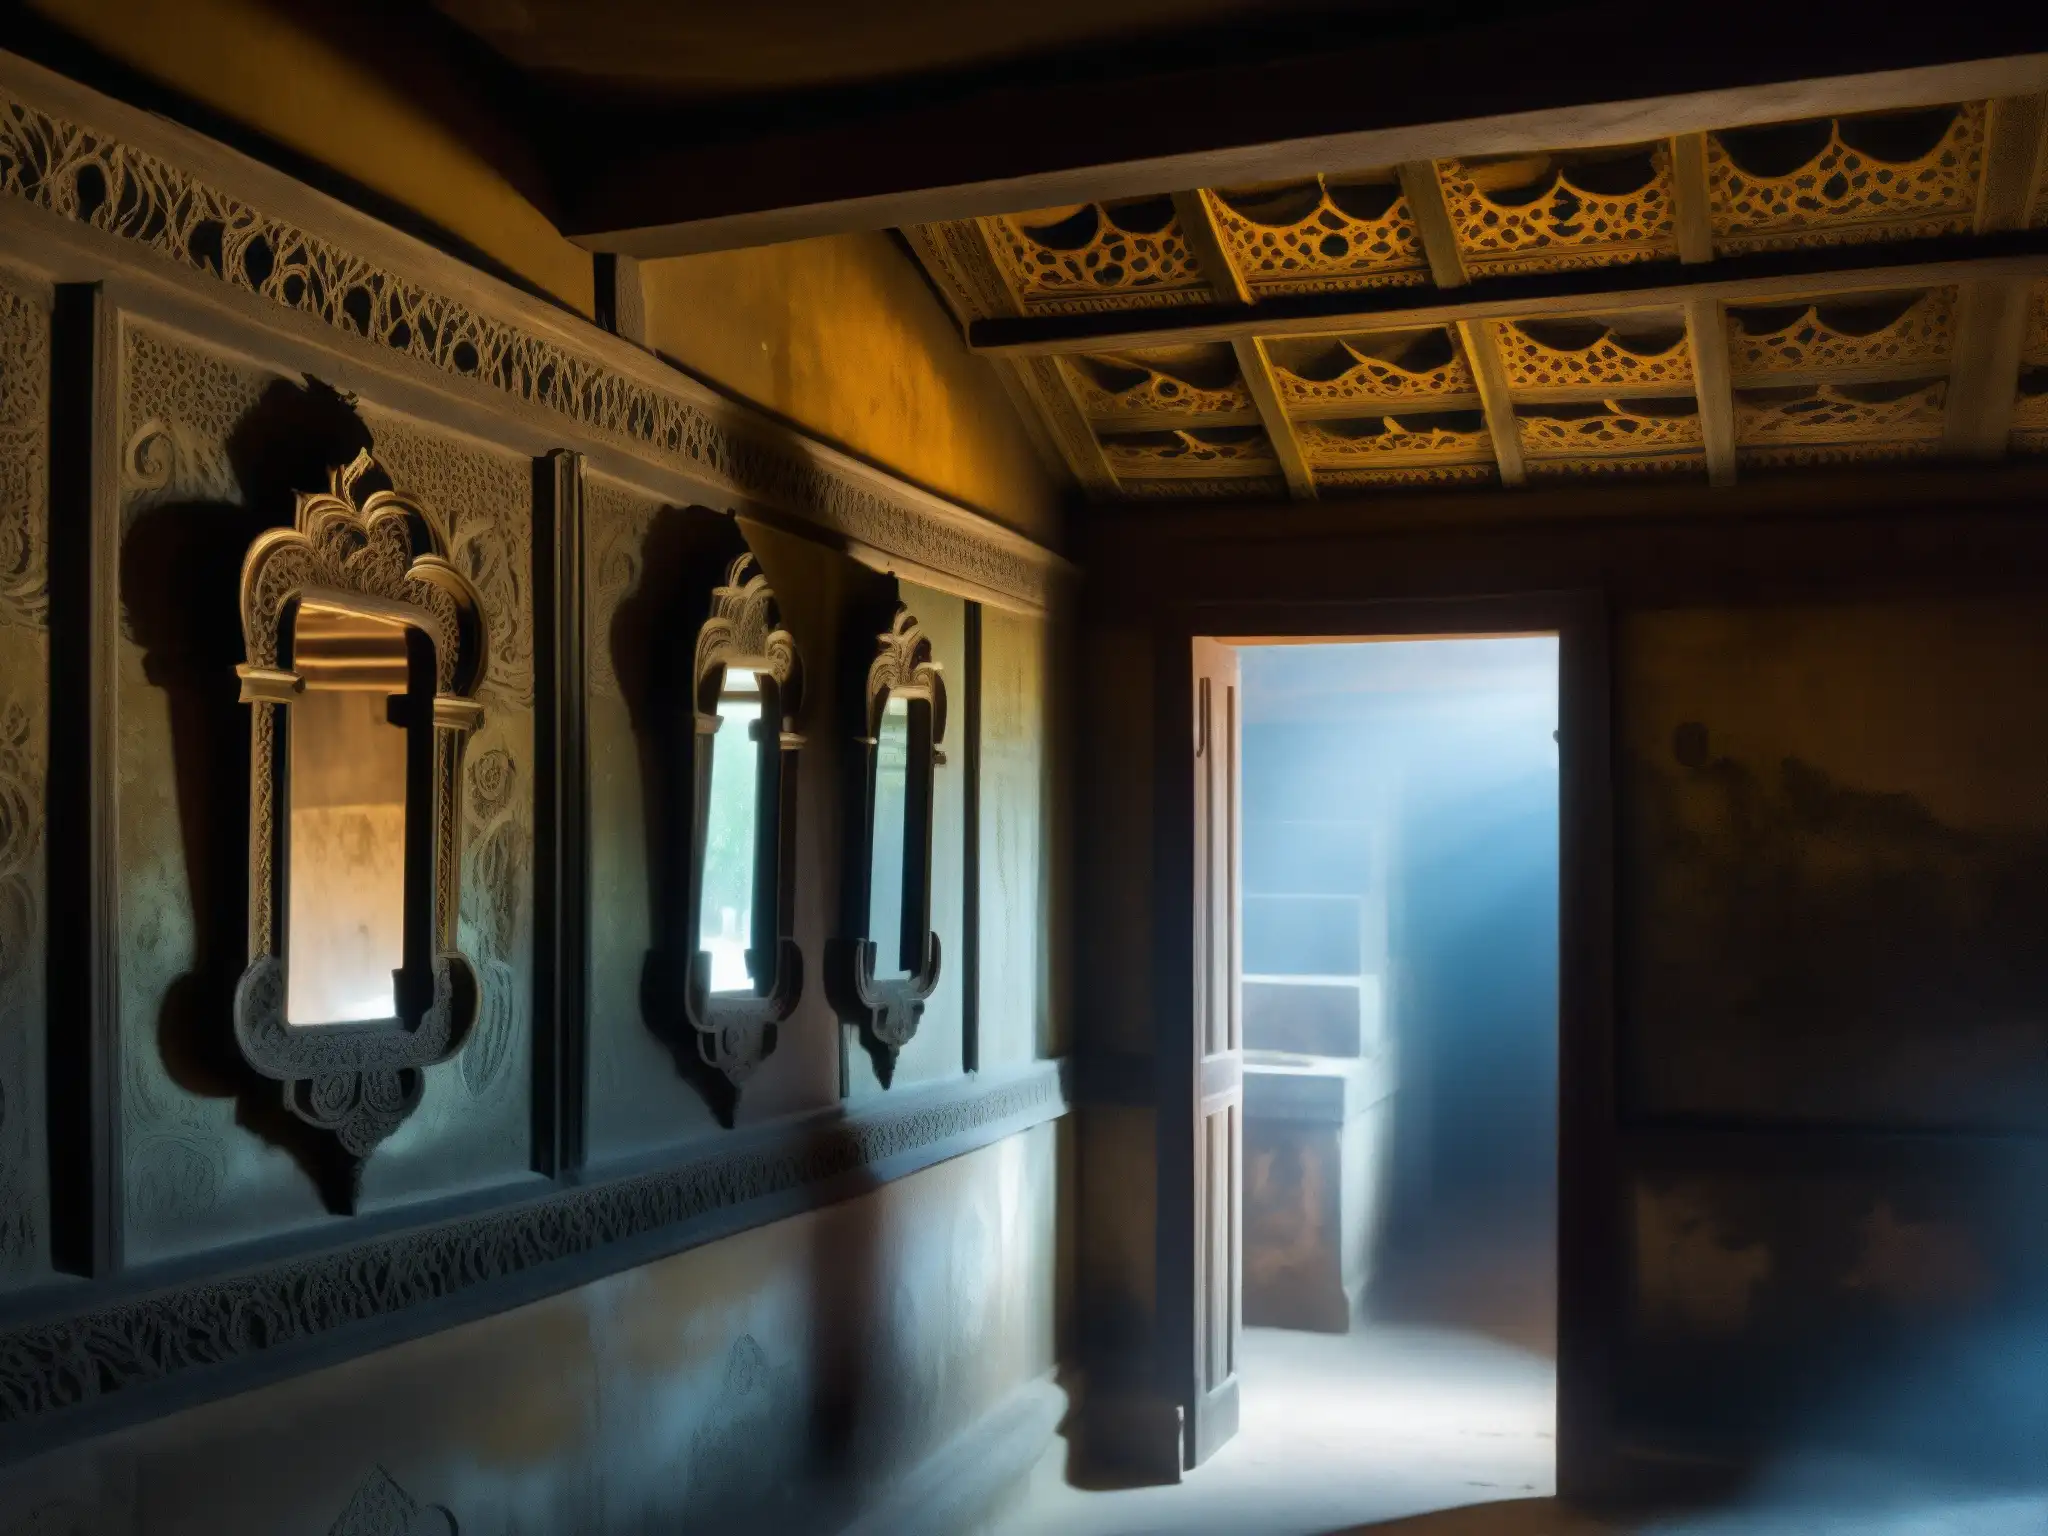 Espejos malditos en habitación oscura de Mayong, India, reflejan una atmósfera inquietante llena de misticismo antiguo y símbolos ominosos